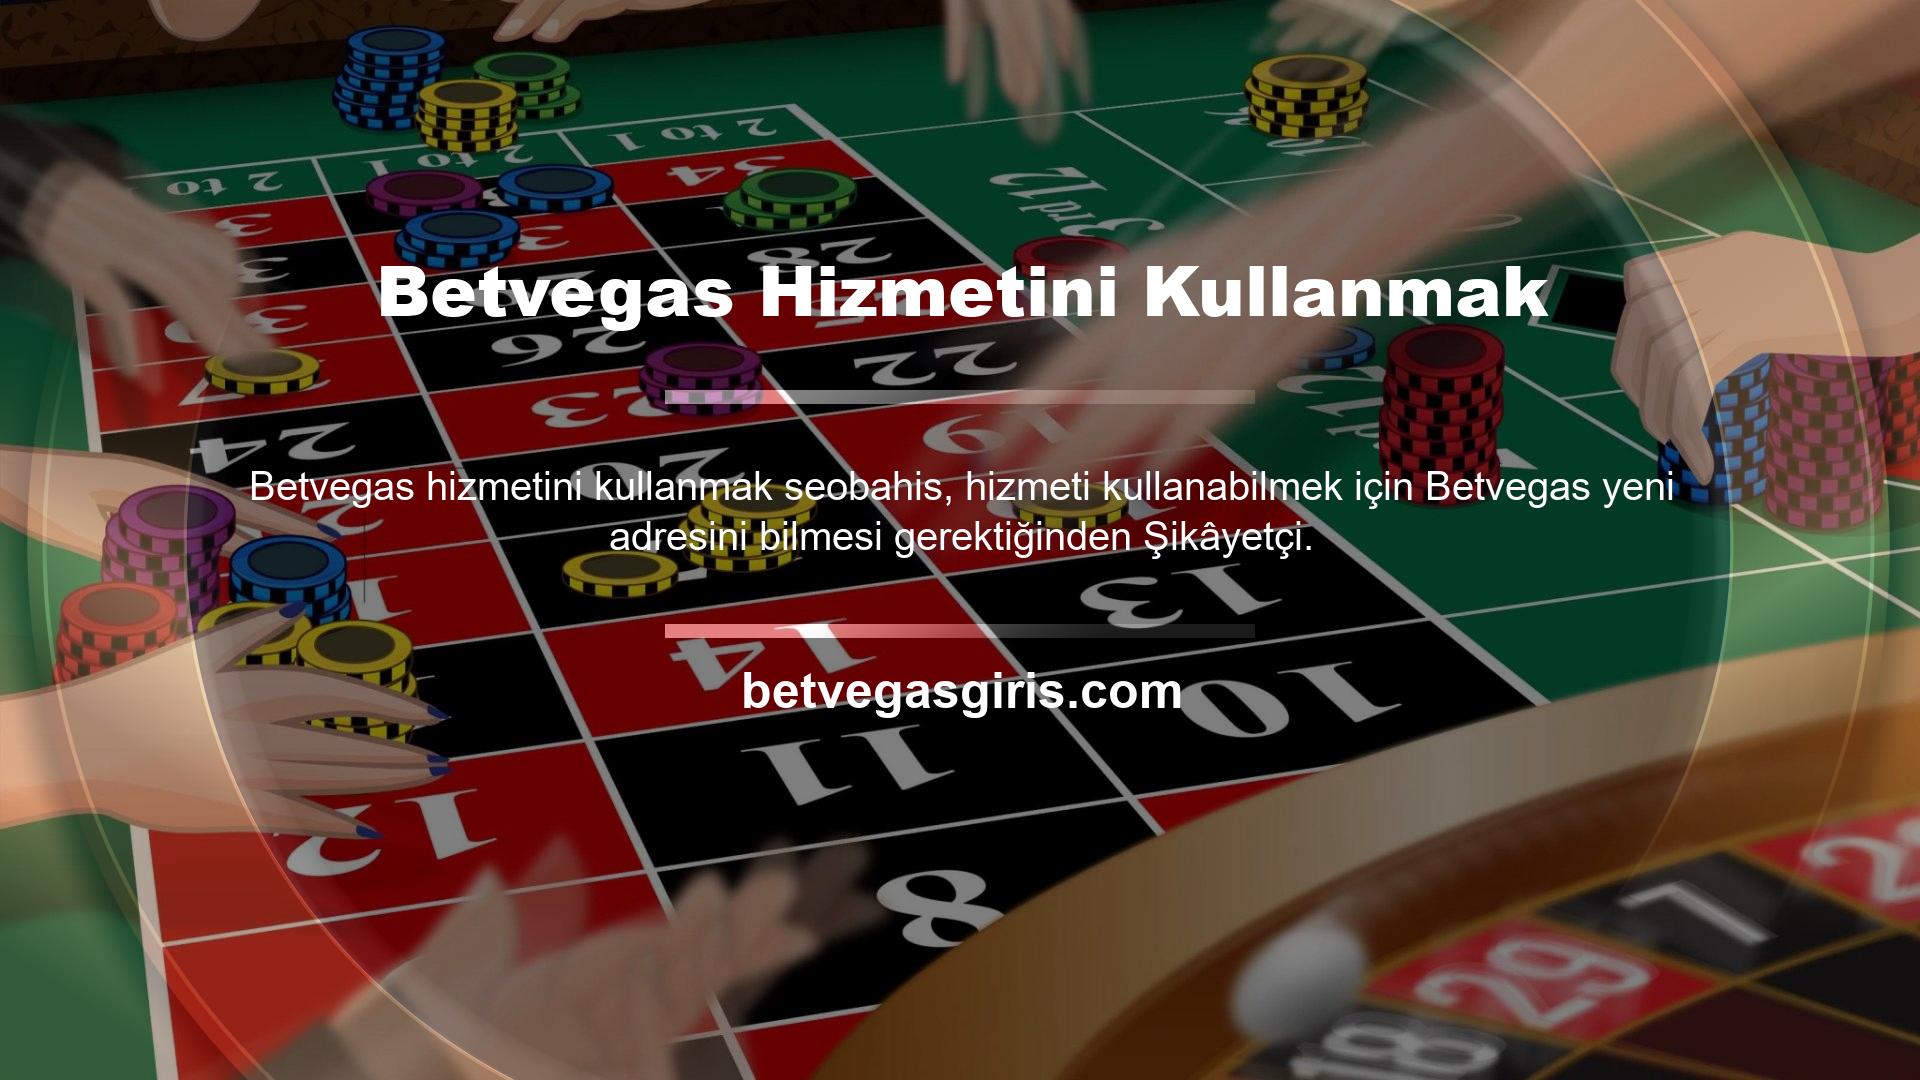 Bu web sitesinin mevcut amaçları doğrultusunda tanımlanan en yeni adres Betvegas adıdır